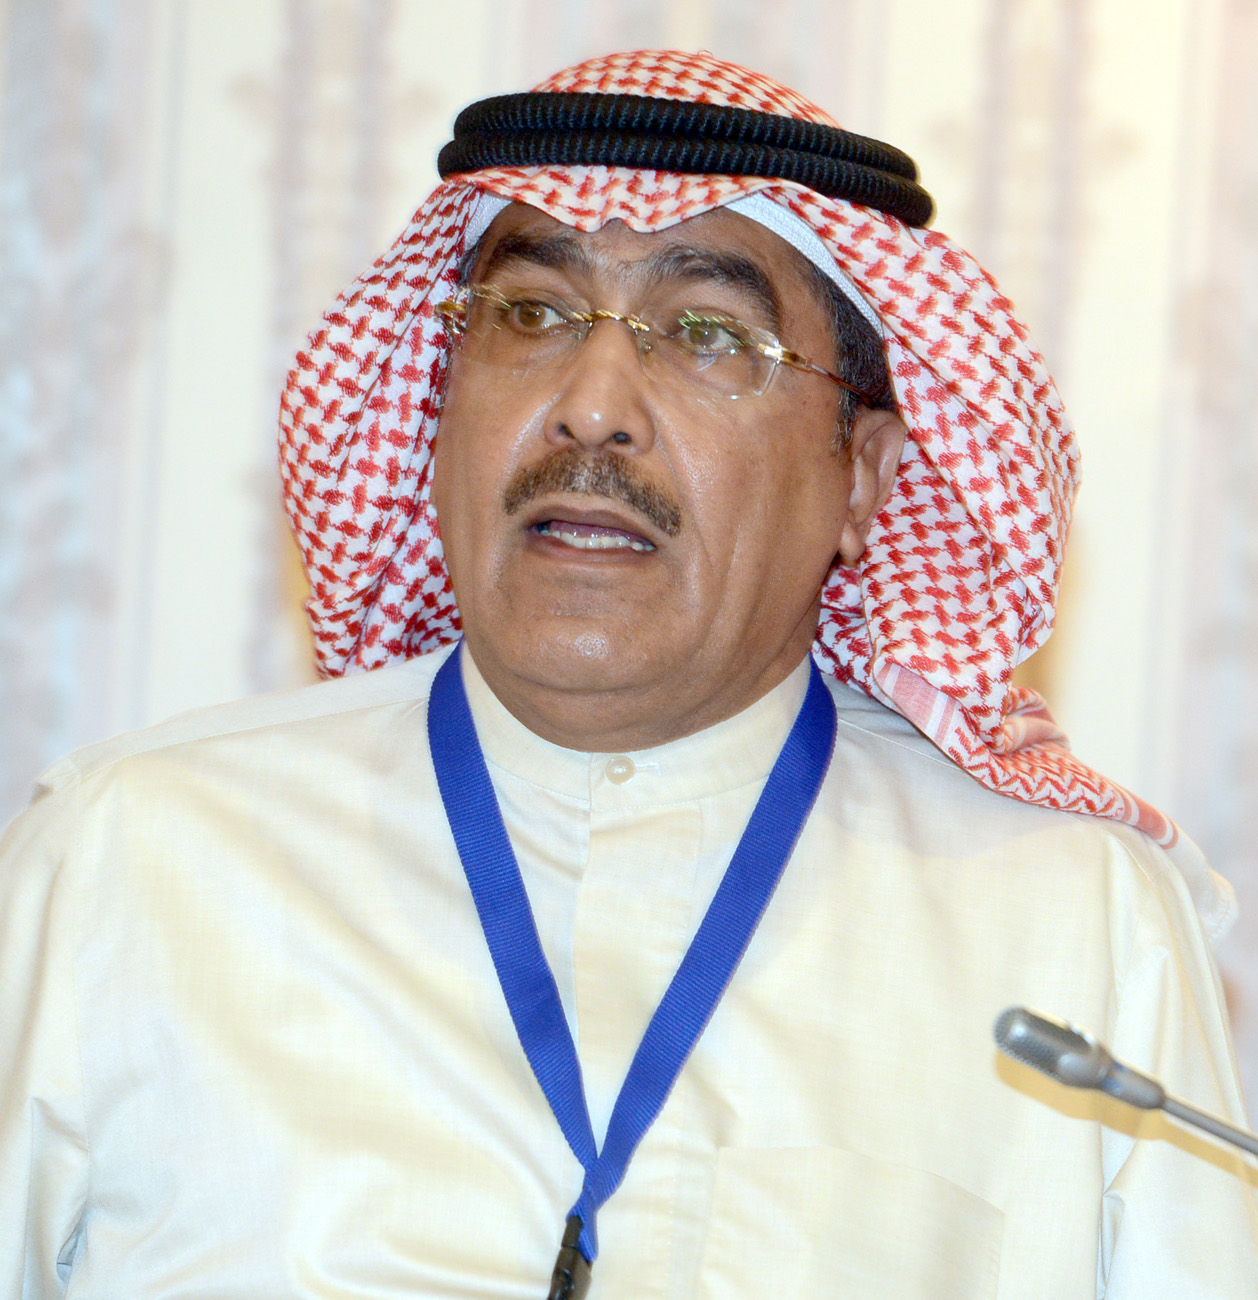 Adnan Al-Rashed, the association secretary general